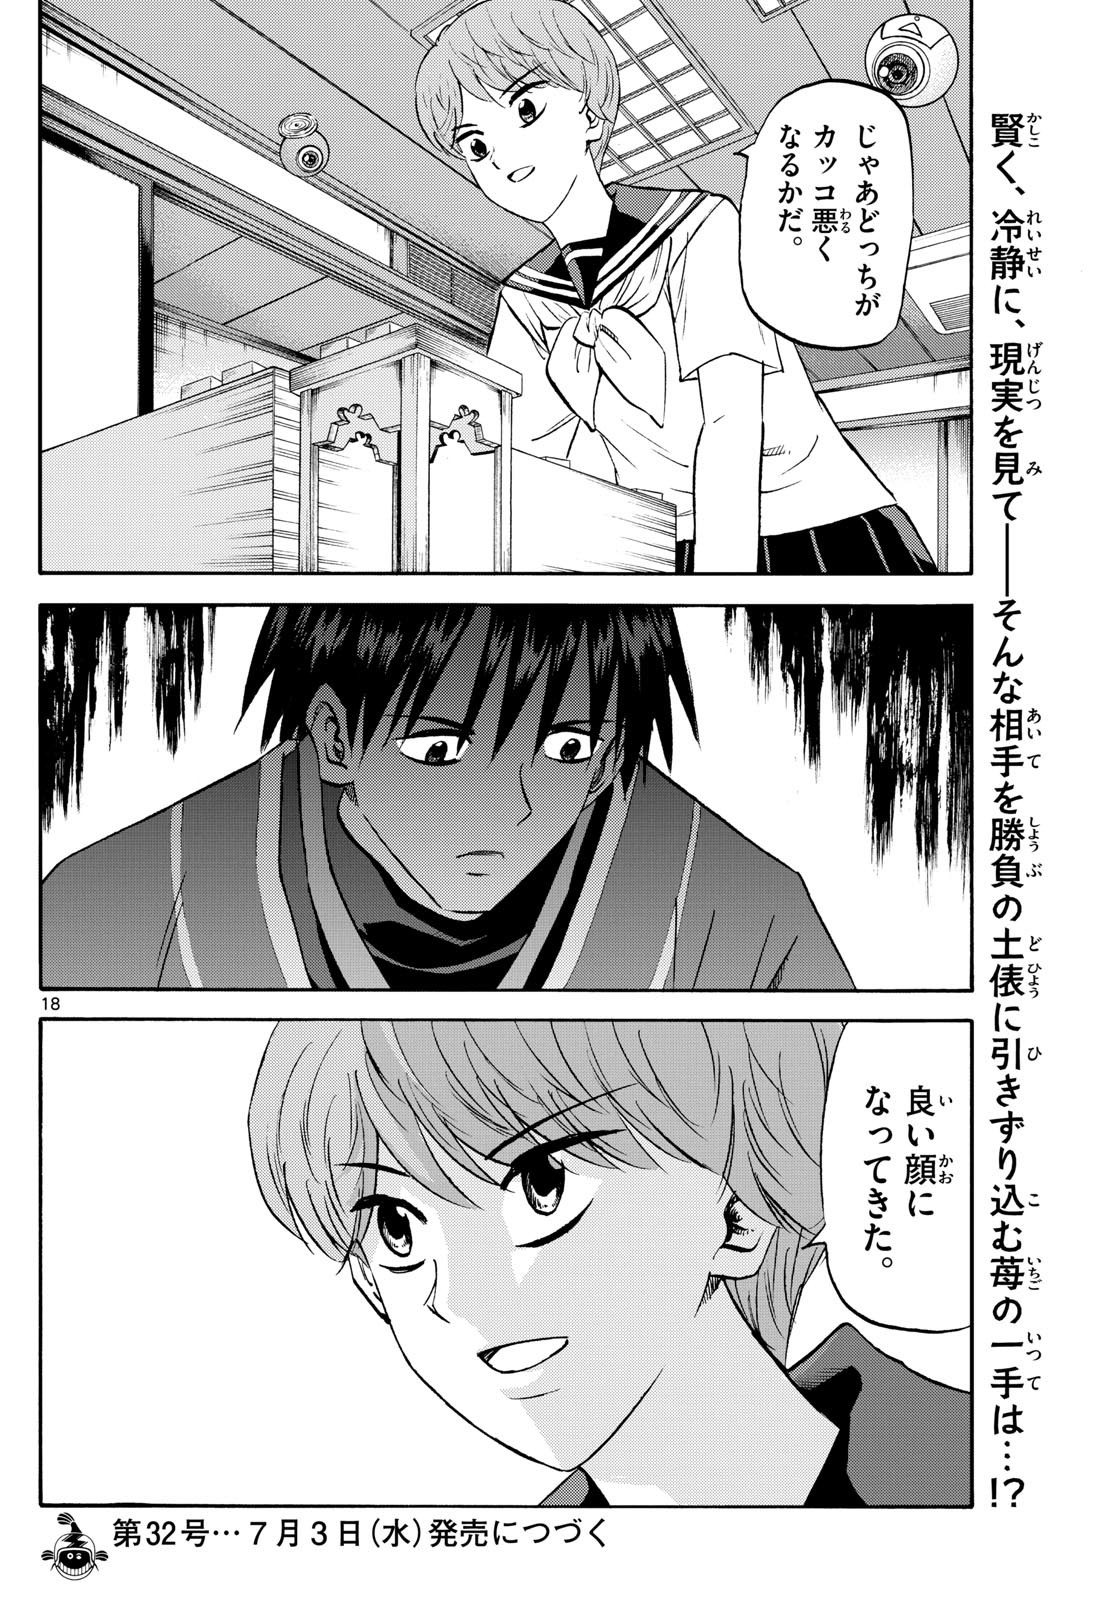 Tatsu to Ichigo - Chapter 197 - Page 18